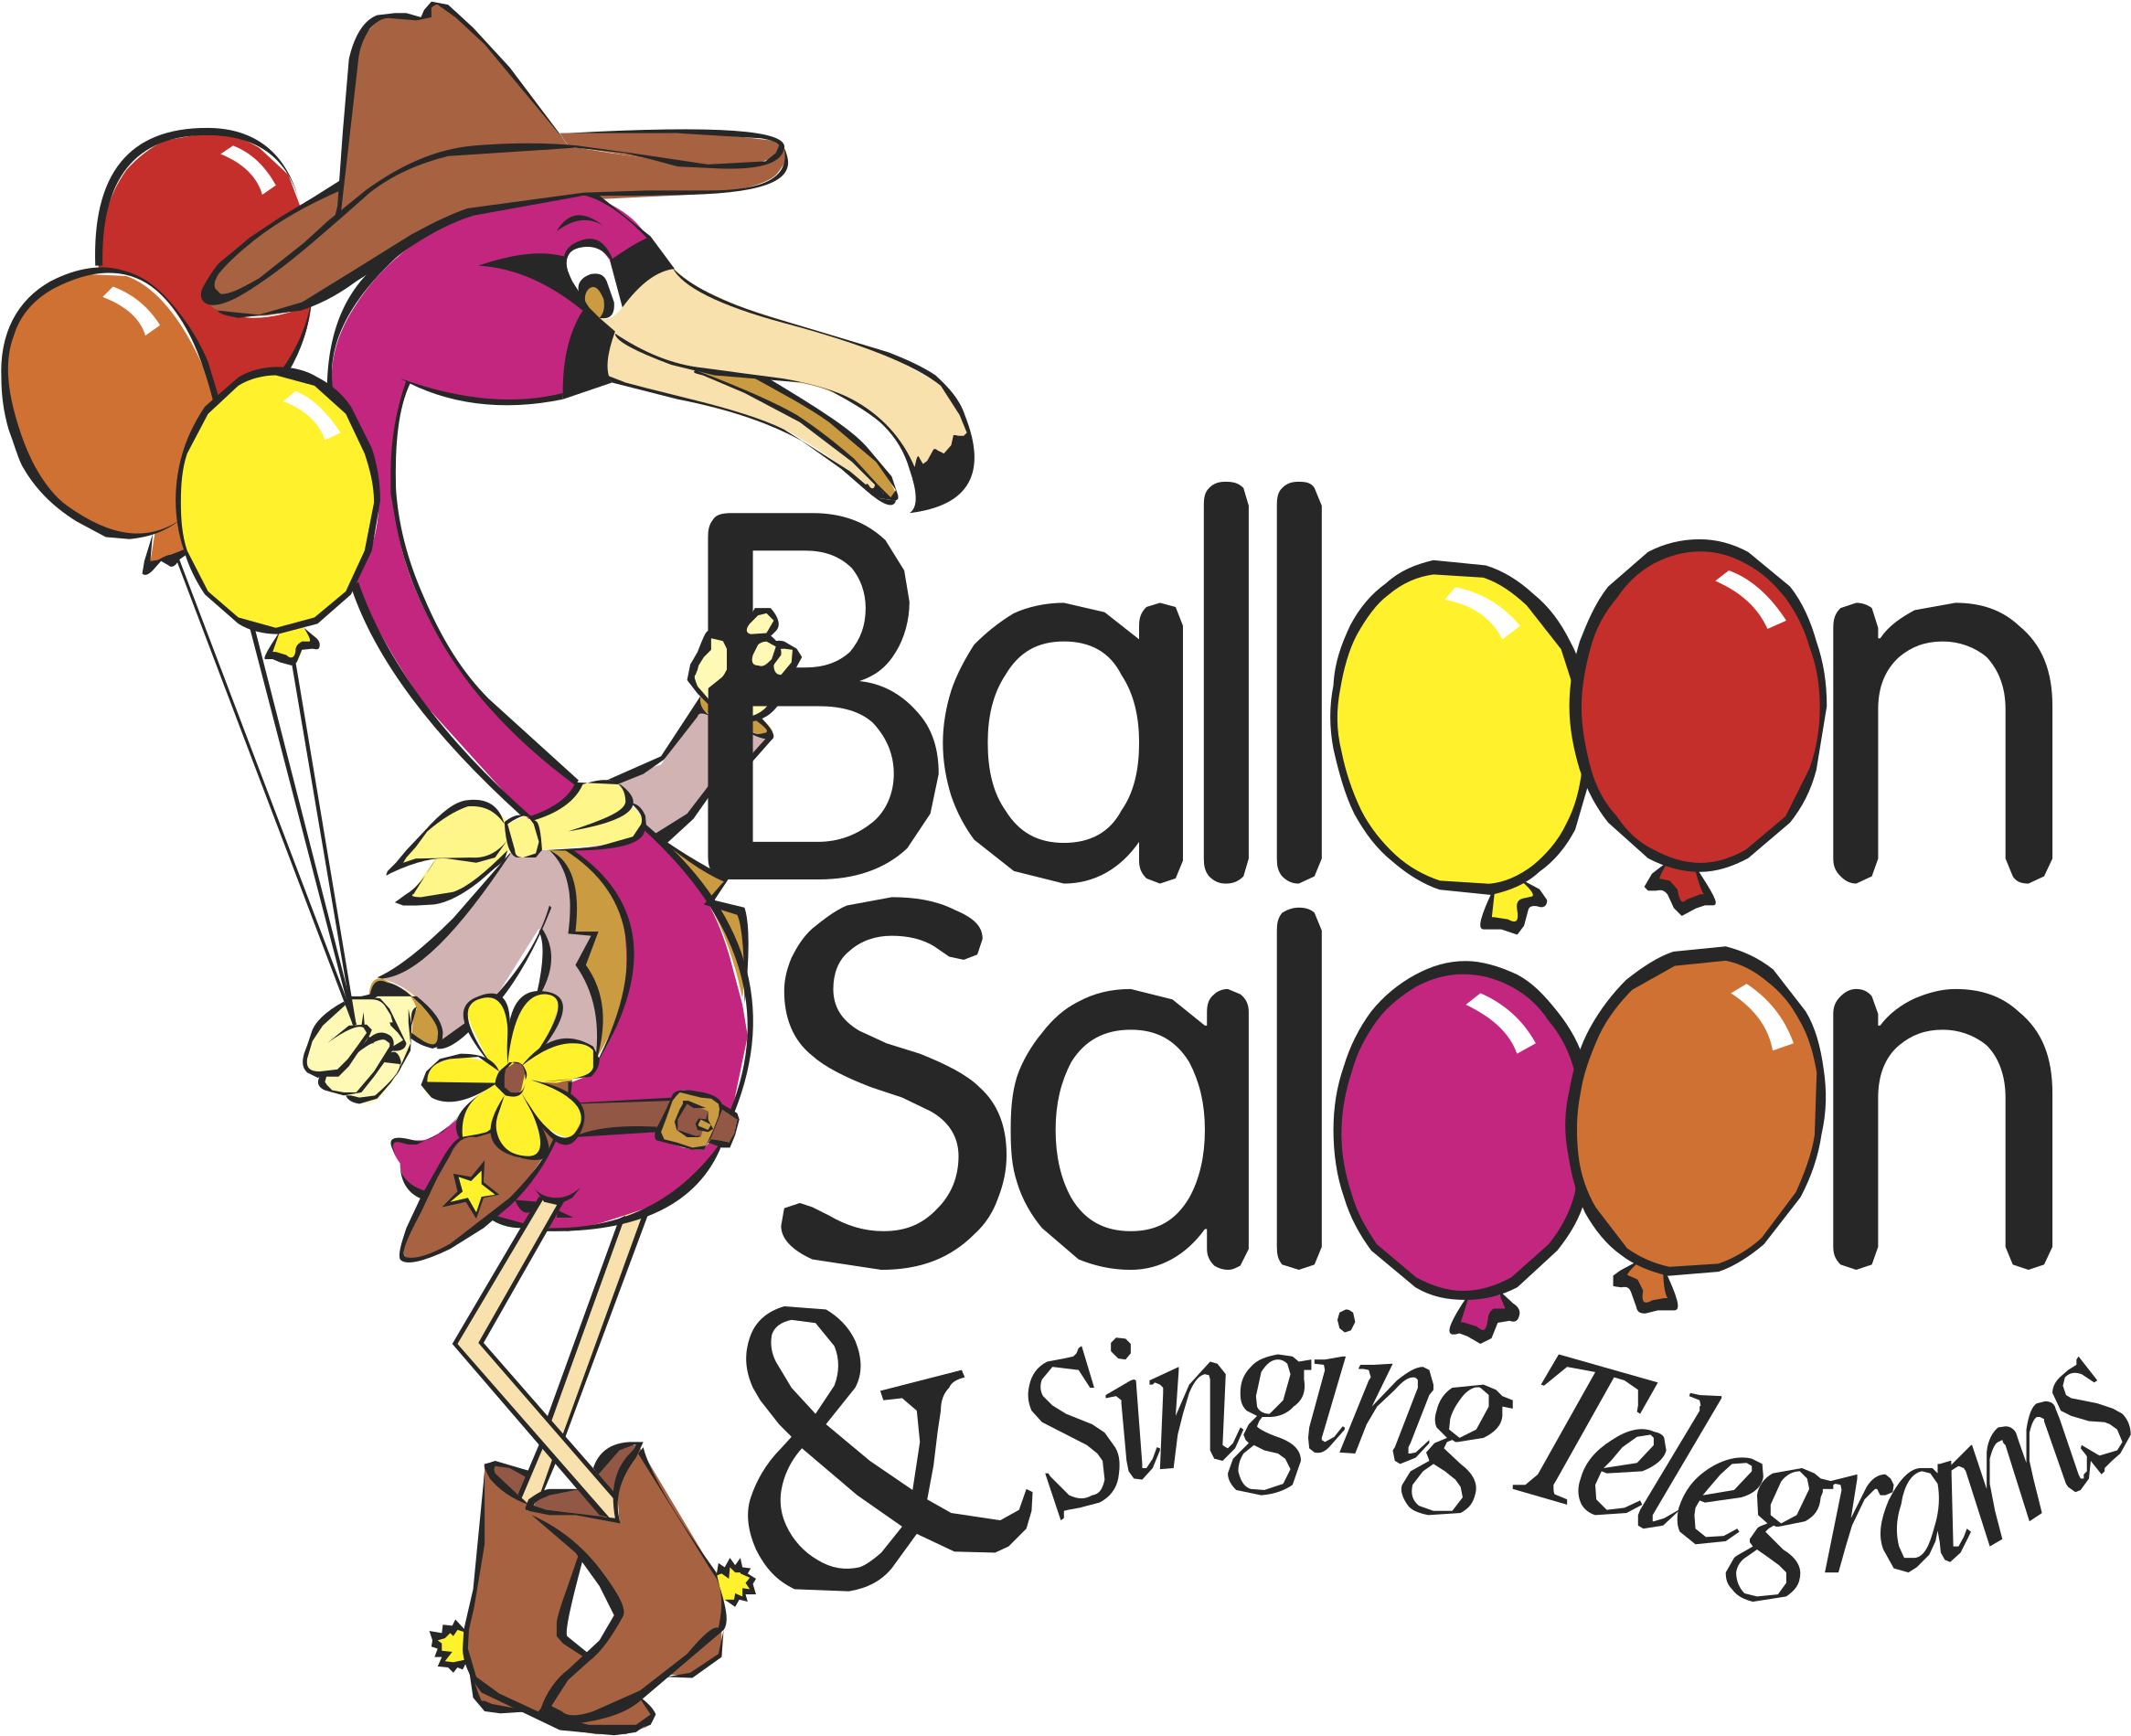 Balloon Singing Telegrams Logo Transparent Background - Balloon Singing Telegrams Logo Transparent Background (2400x2400)